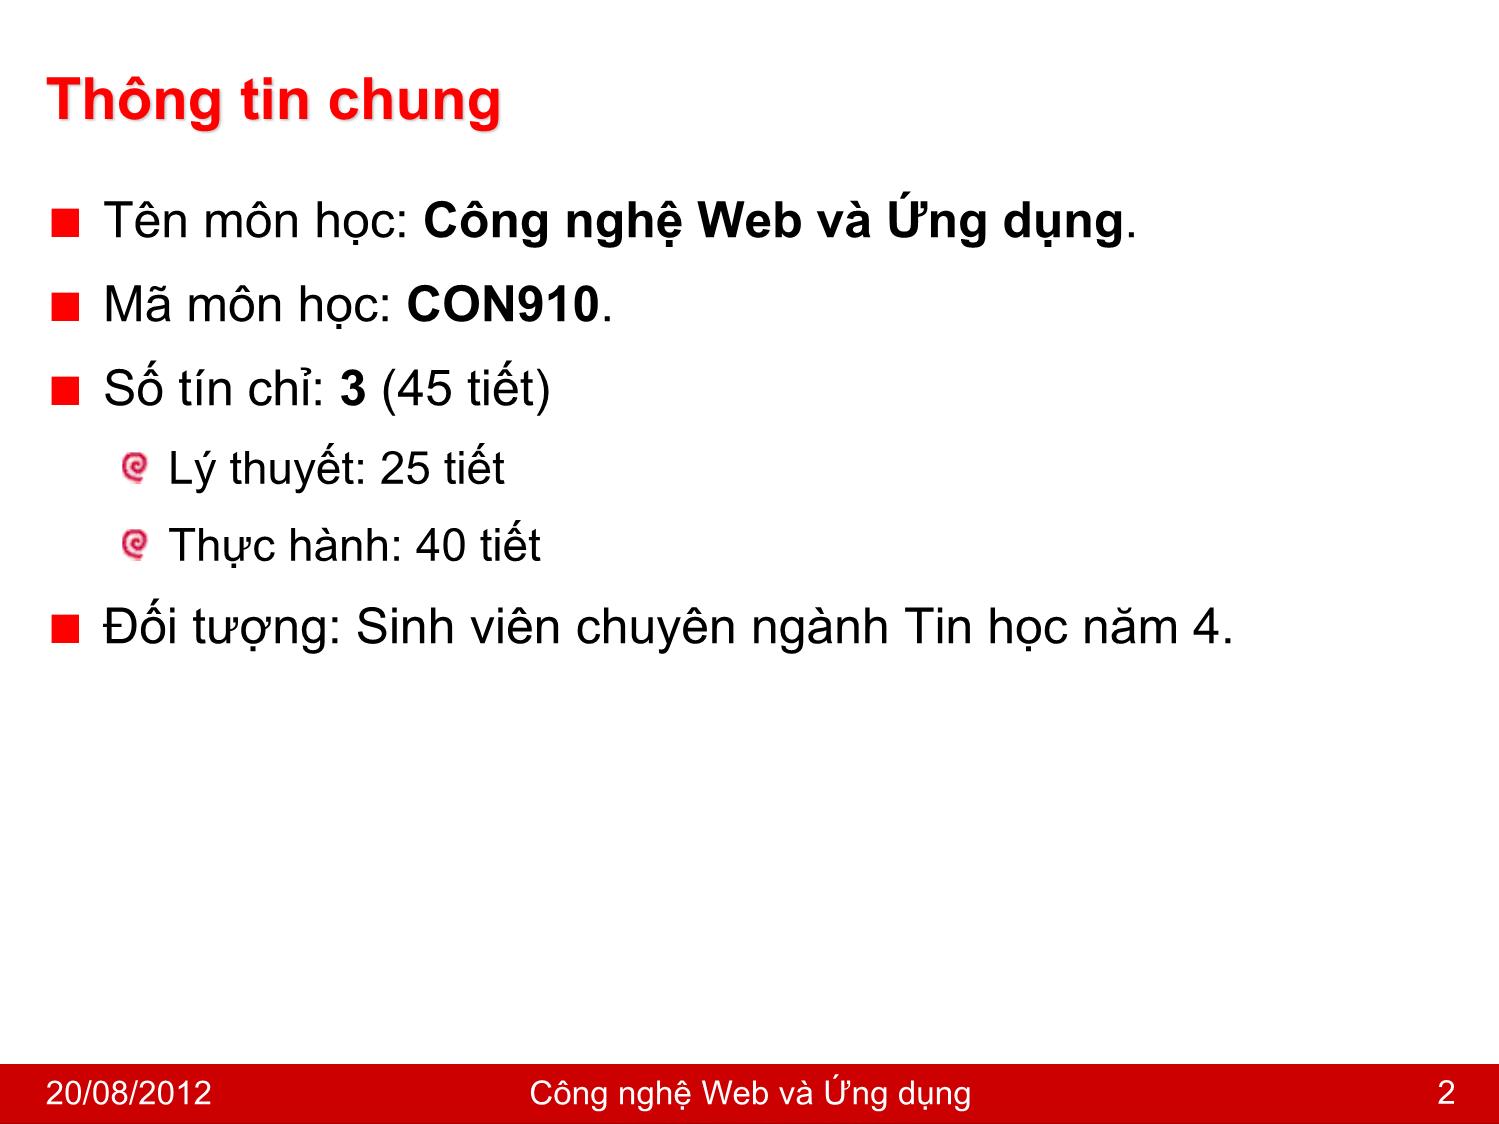 Bài giảng Công nghệ Web và ứng dụng - Giới thiệu môn học - Nguyễn Hoàng Tùng trang 2